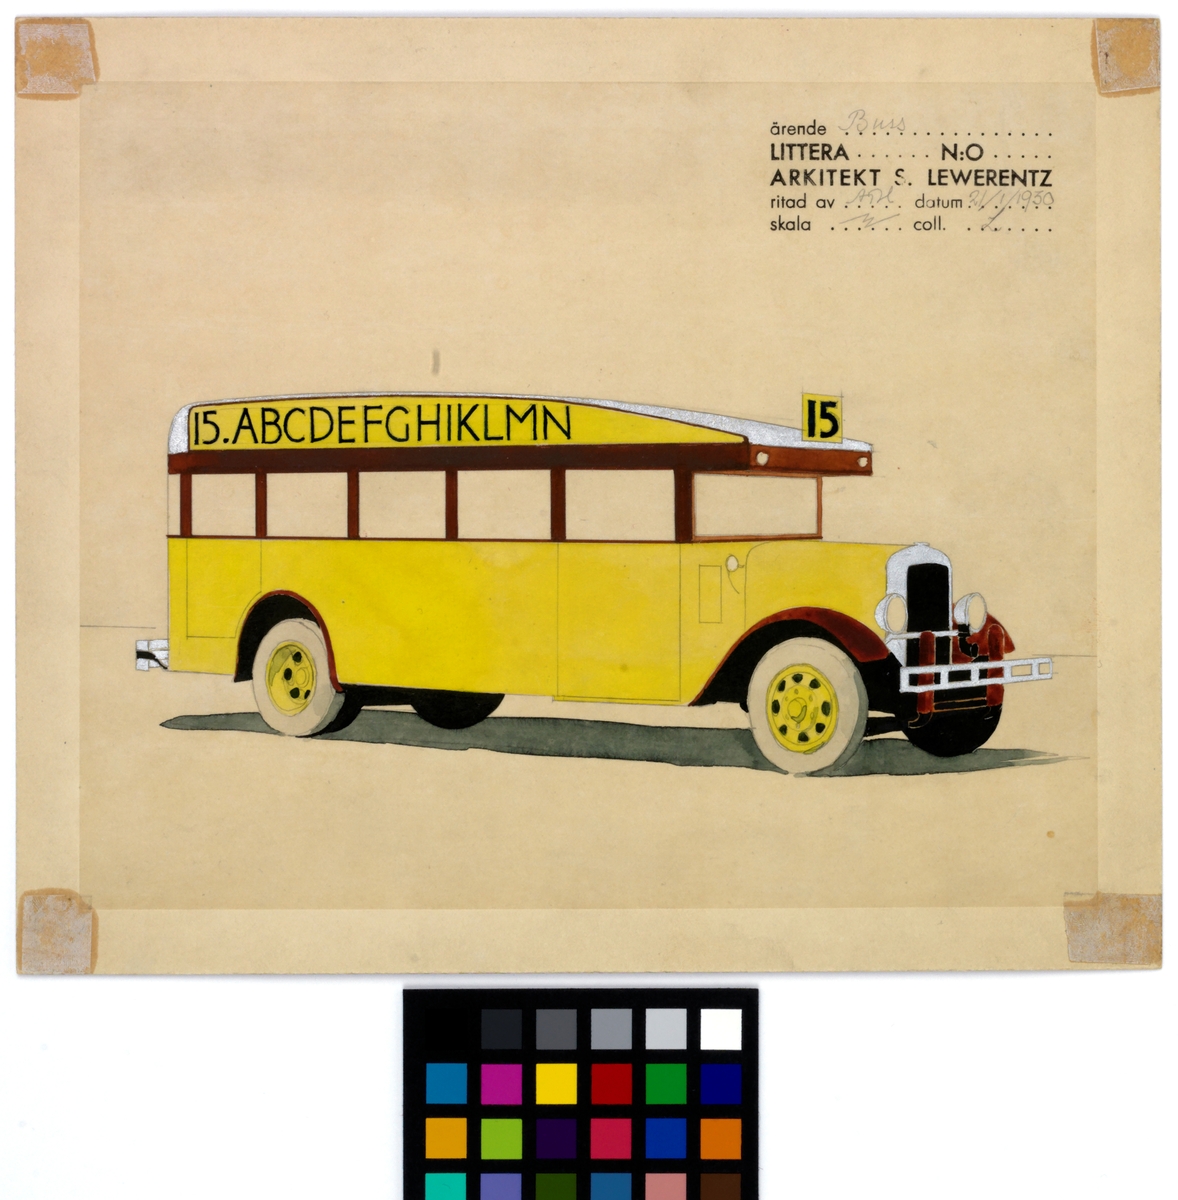 Stockholmsutställningen 1930
Buss för General Motors